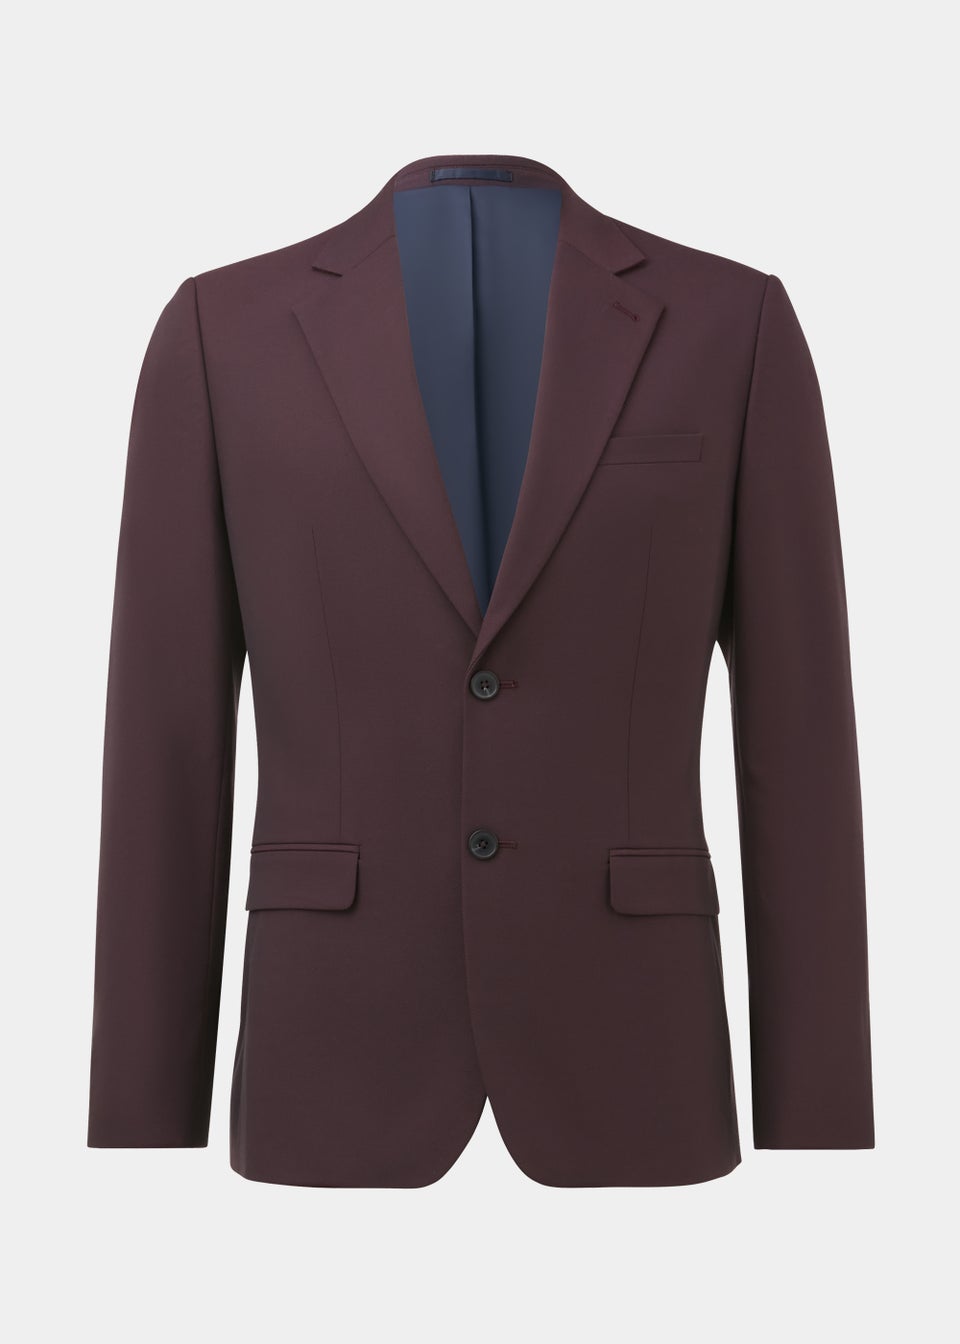 Taylor & Wright Putney Plum Slim Fit Suit Jacket